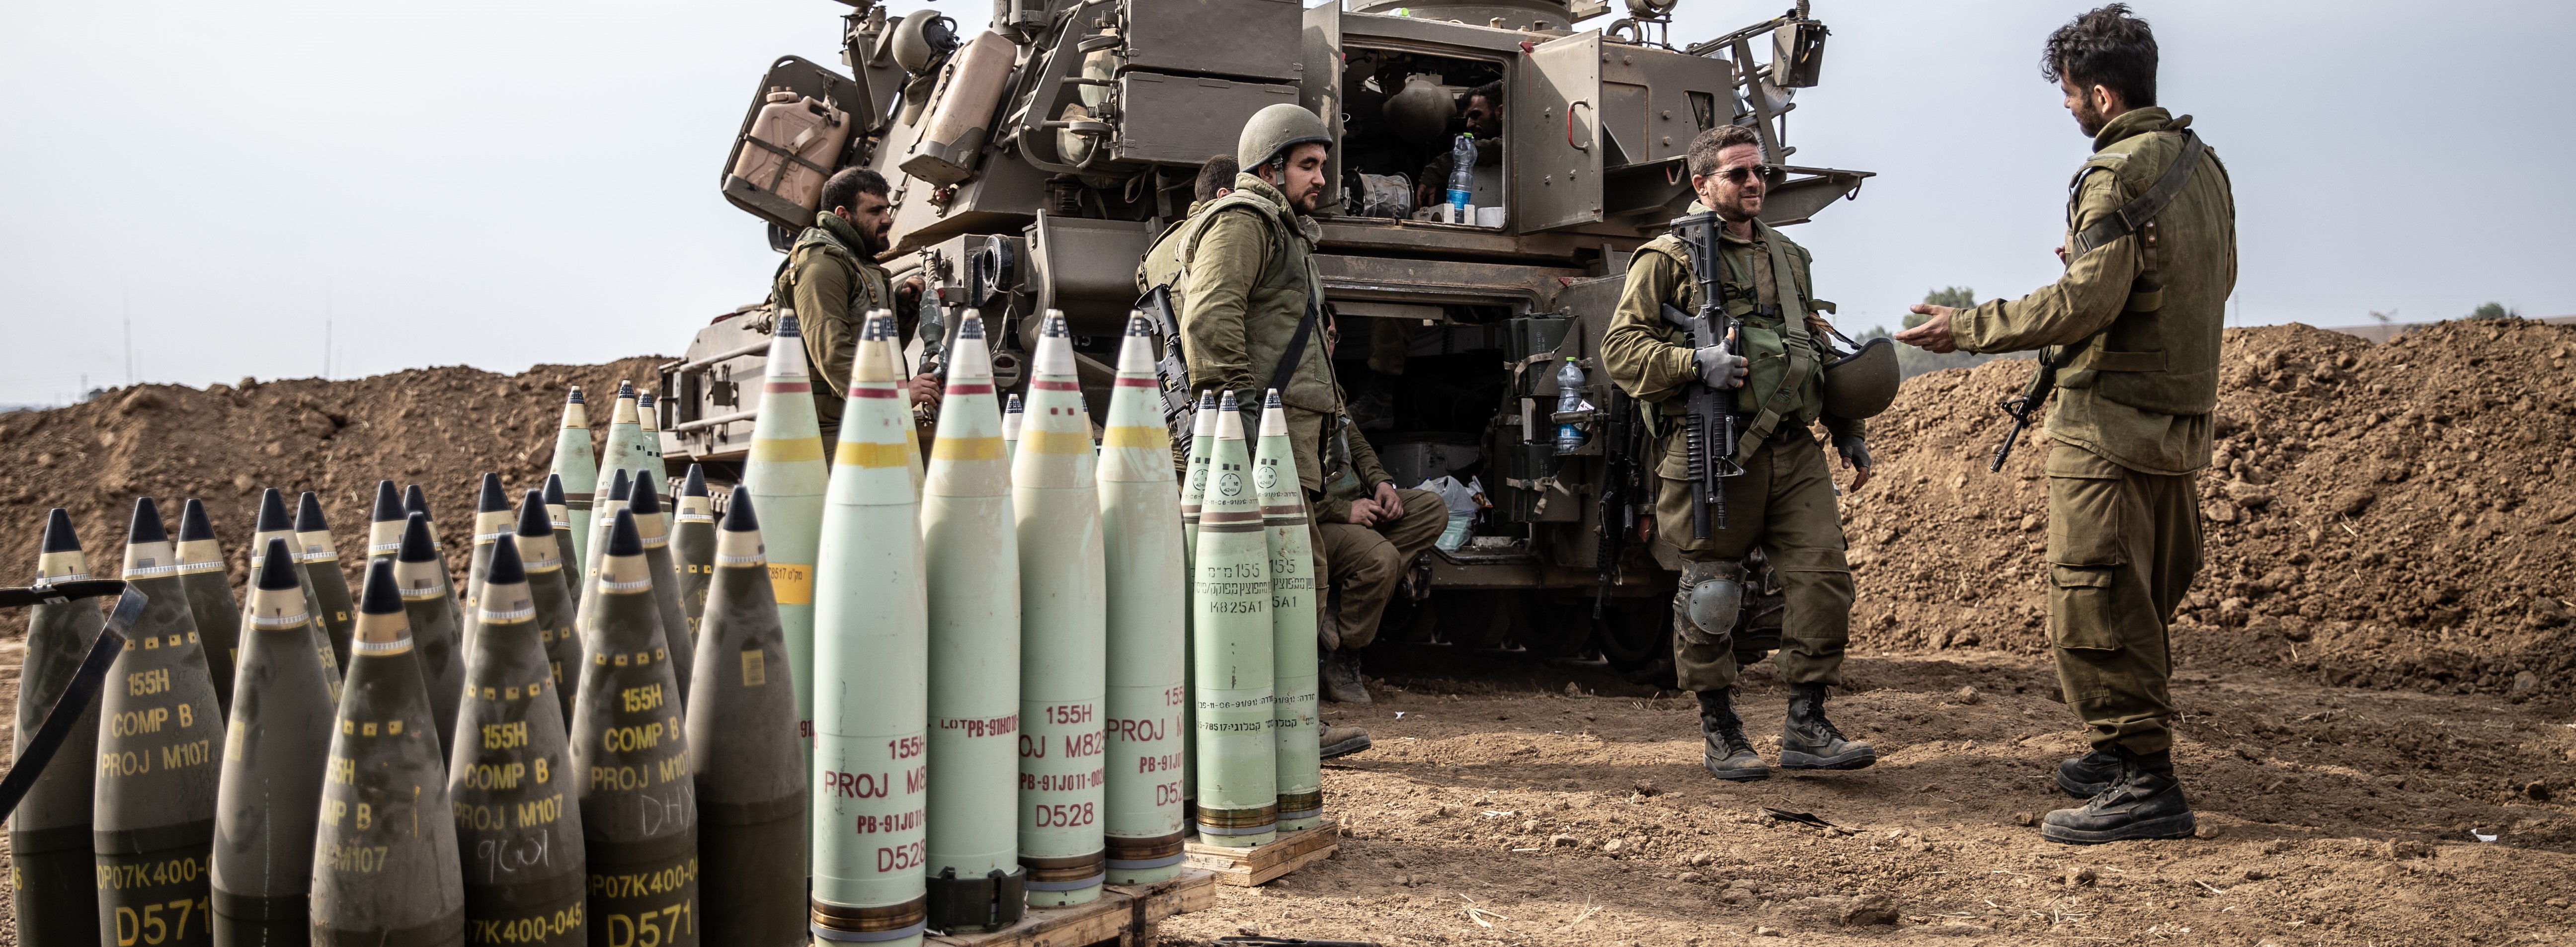 İsrail'in savaşta fosfor bombası kullandığı nasıl ispatlandı? (TIKLA&DİNLE)